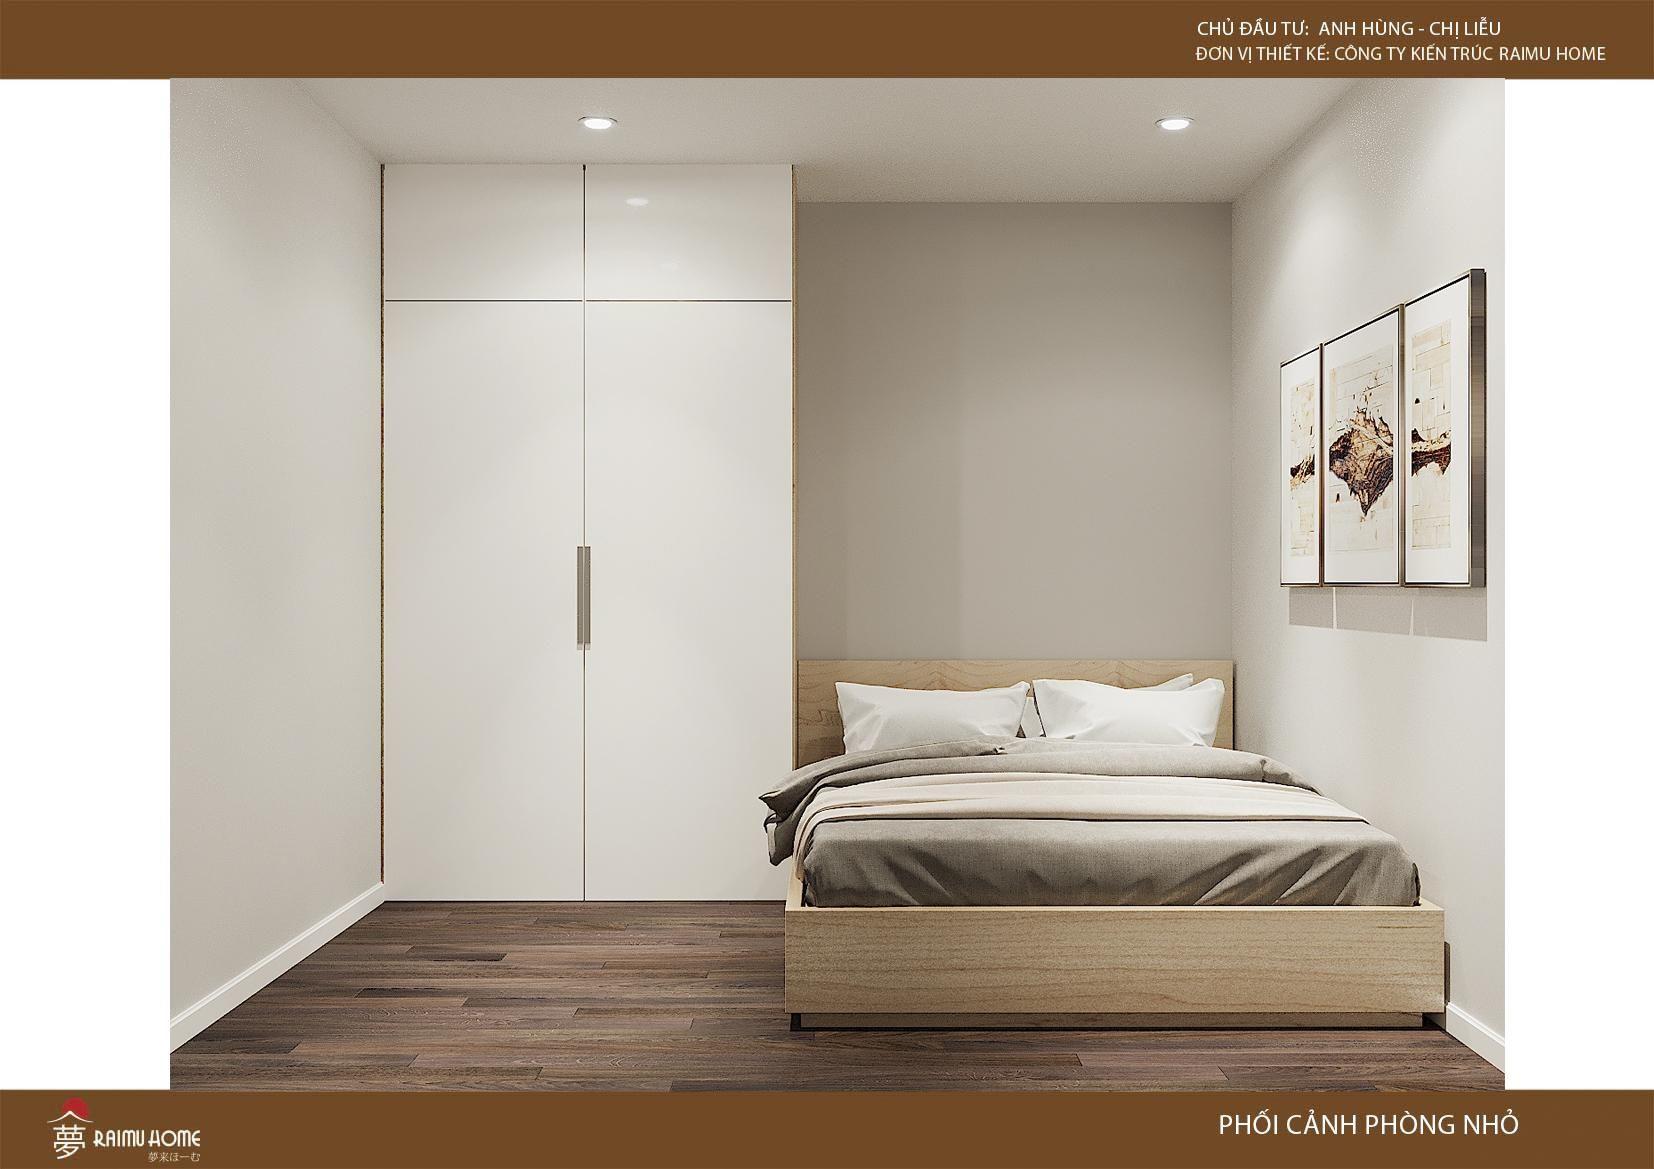 Cách trang trí phòng ngủ nhỏ đơn giản mà đẹp và rộng rãi 2023